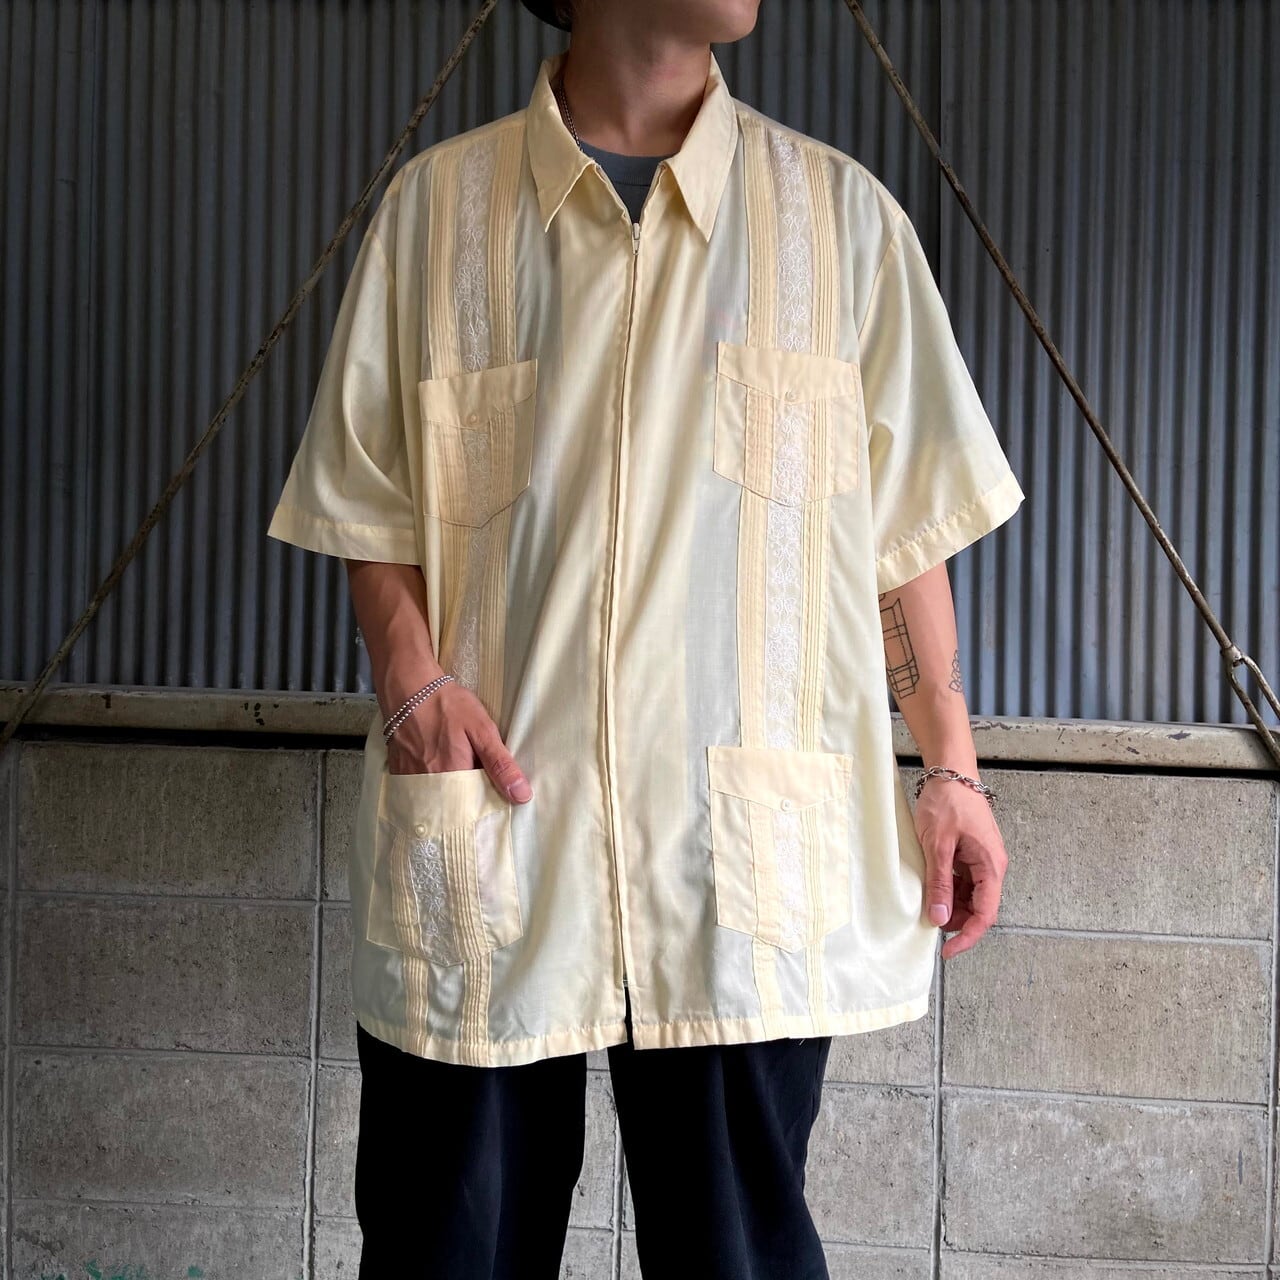 【超希少‼︎】Cuban shirt キューバシャツ　ビッグサイズ